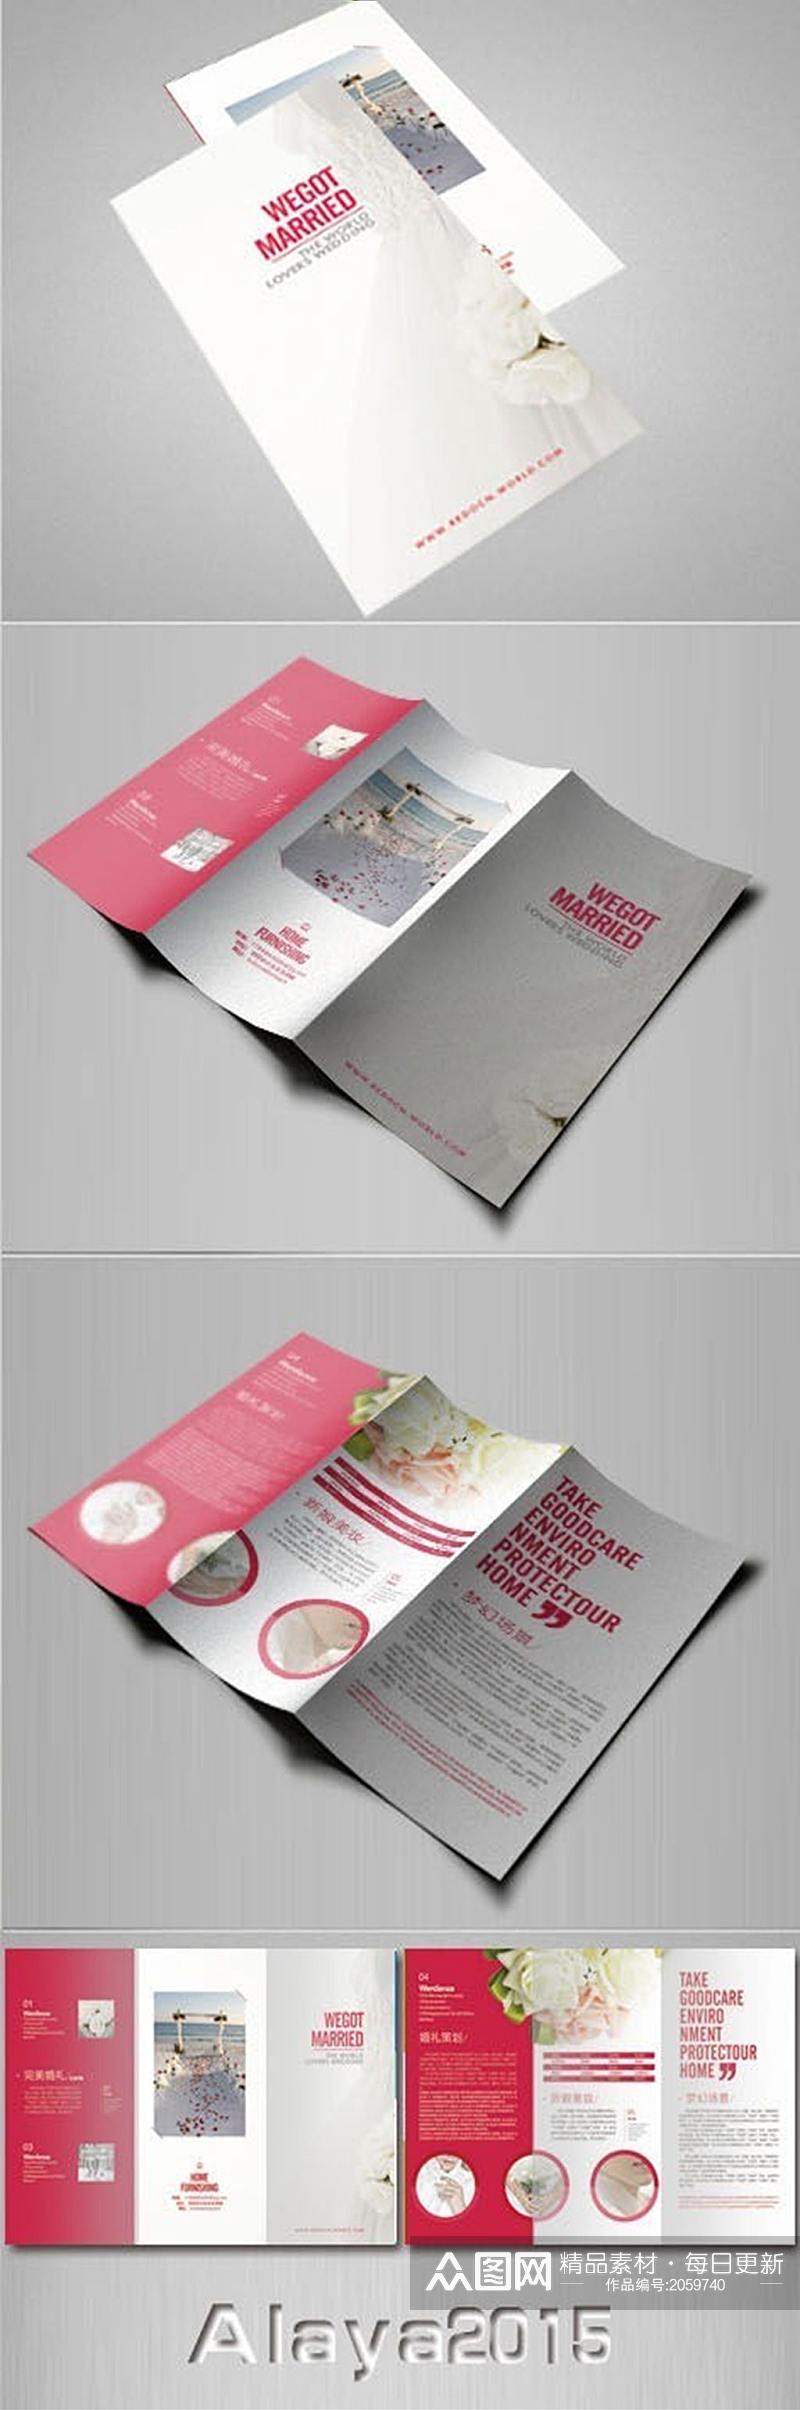 时尚婚庆策划宣传折页设计素材